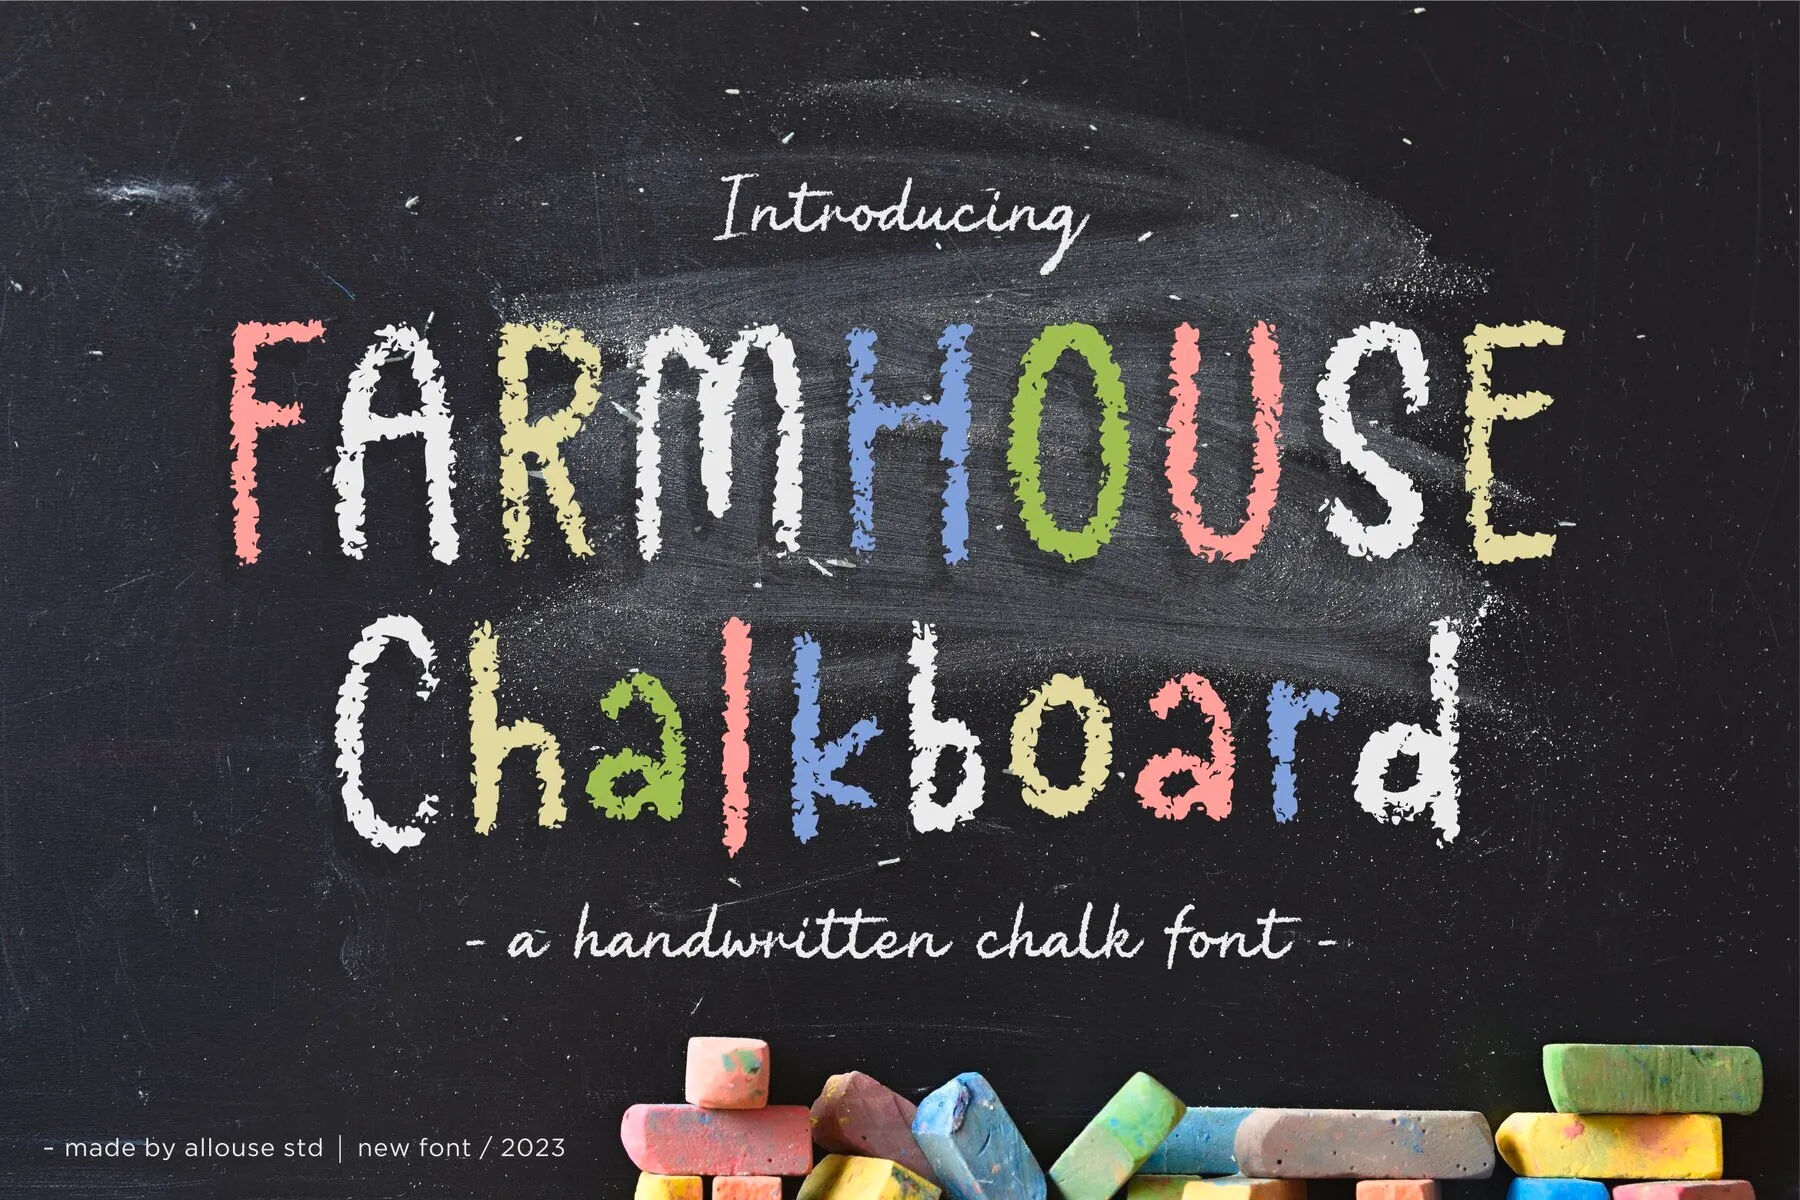 Farmhouse Chalkboard